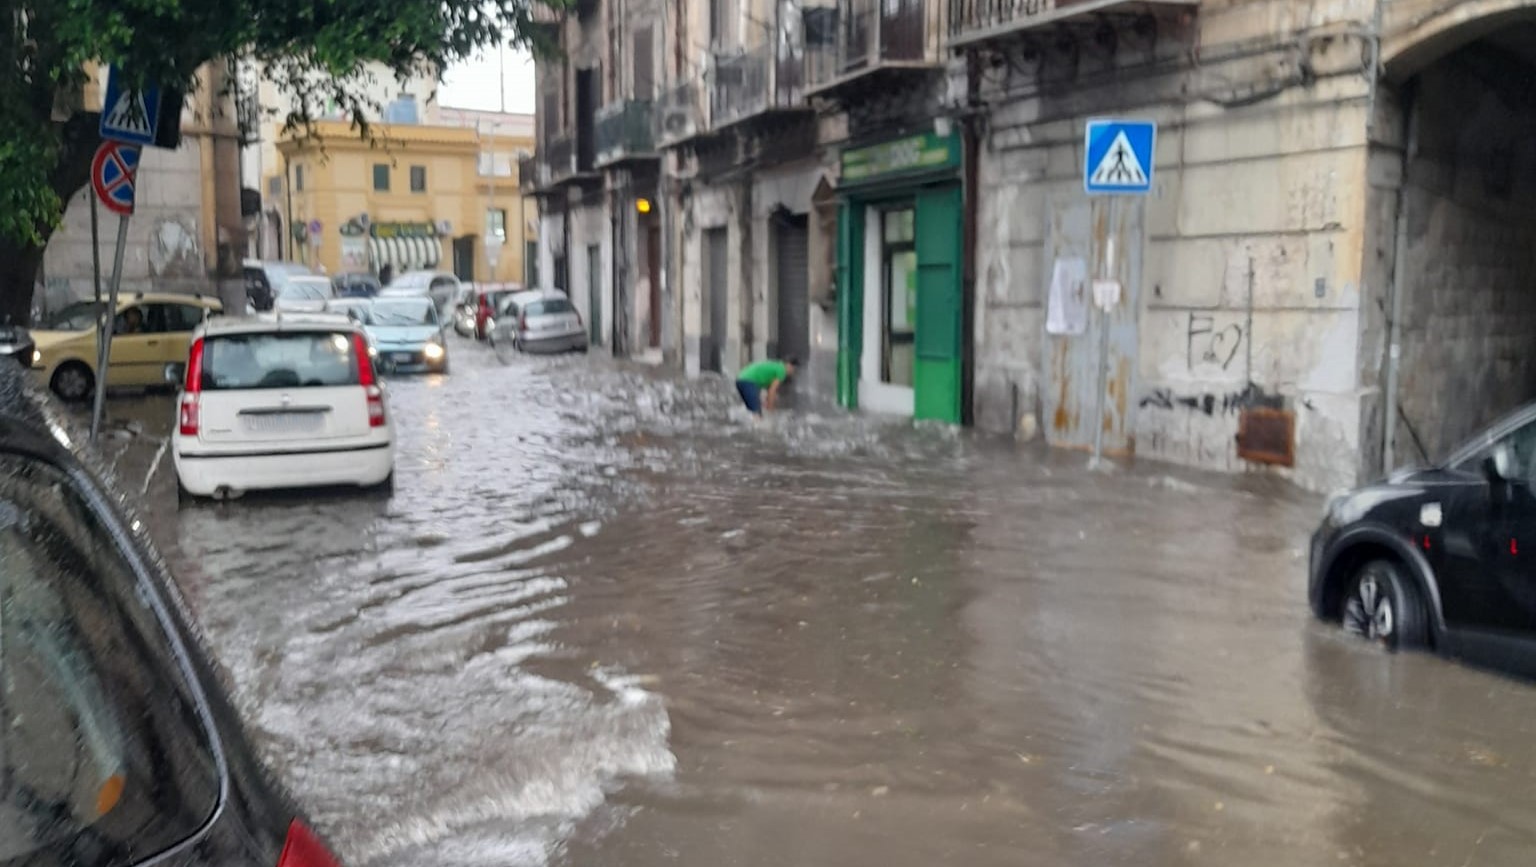 Palermo senza tregua, dalle fiamme al maltempo: forte temporale e strade allagate